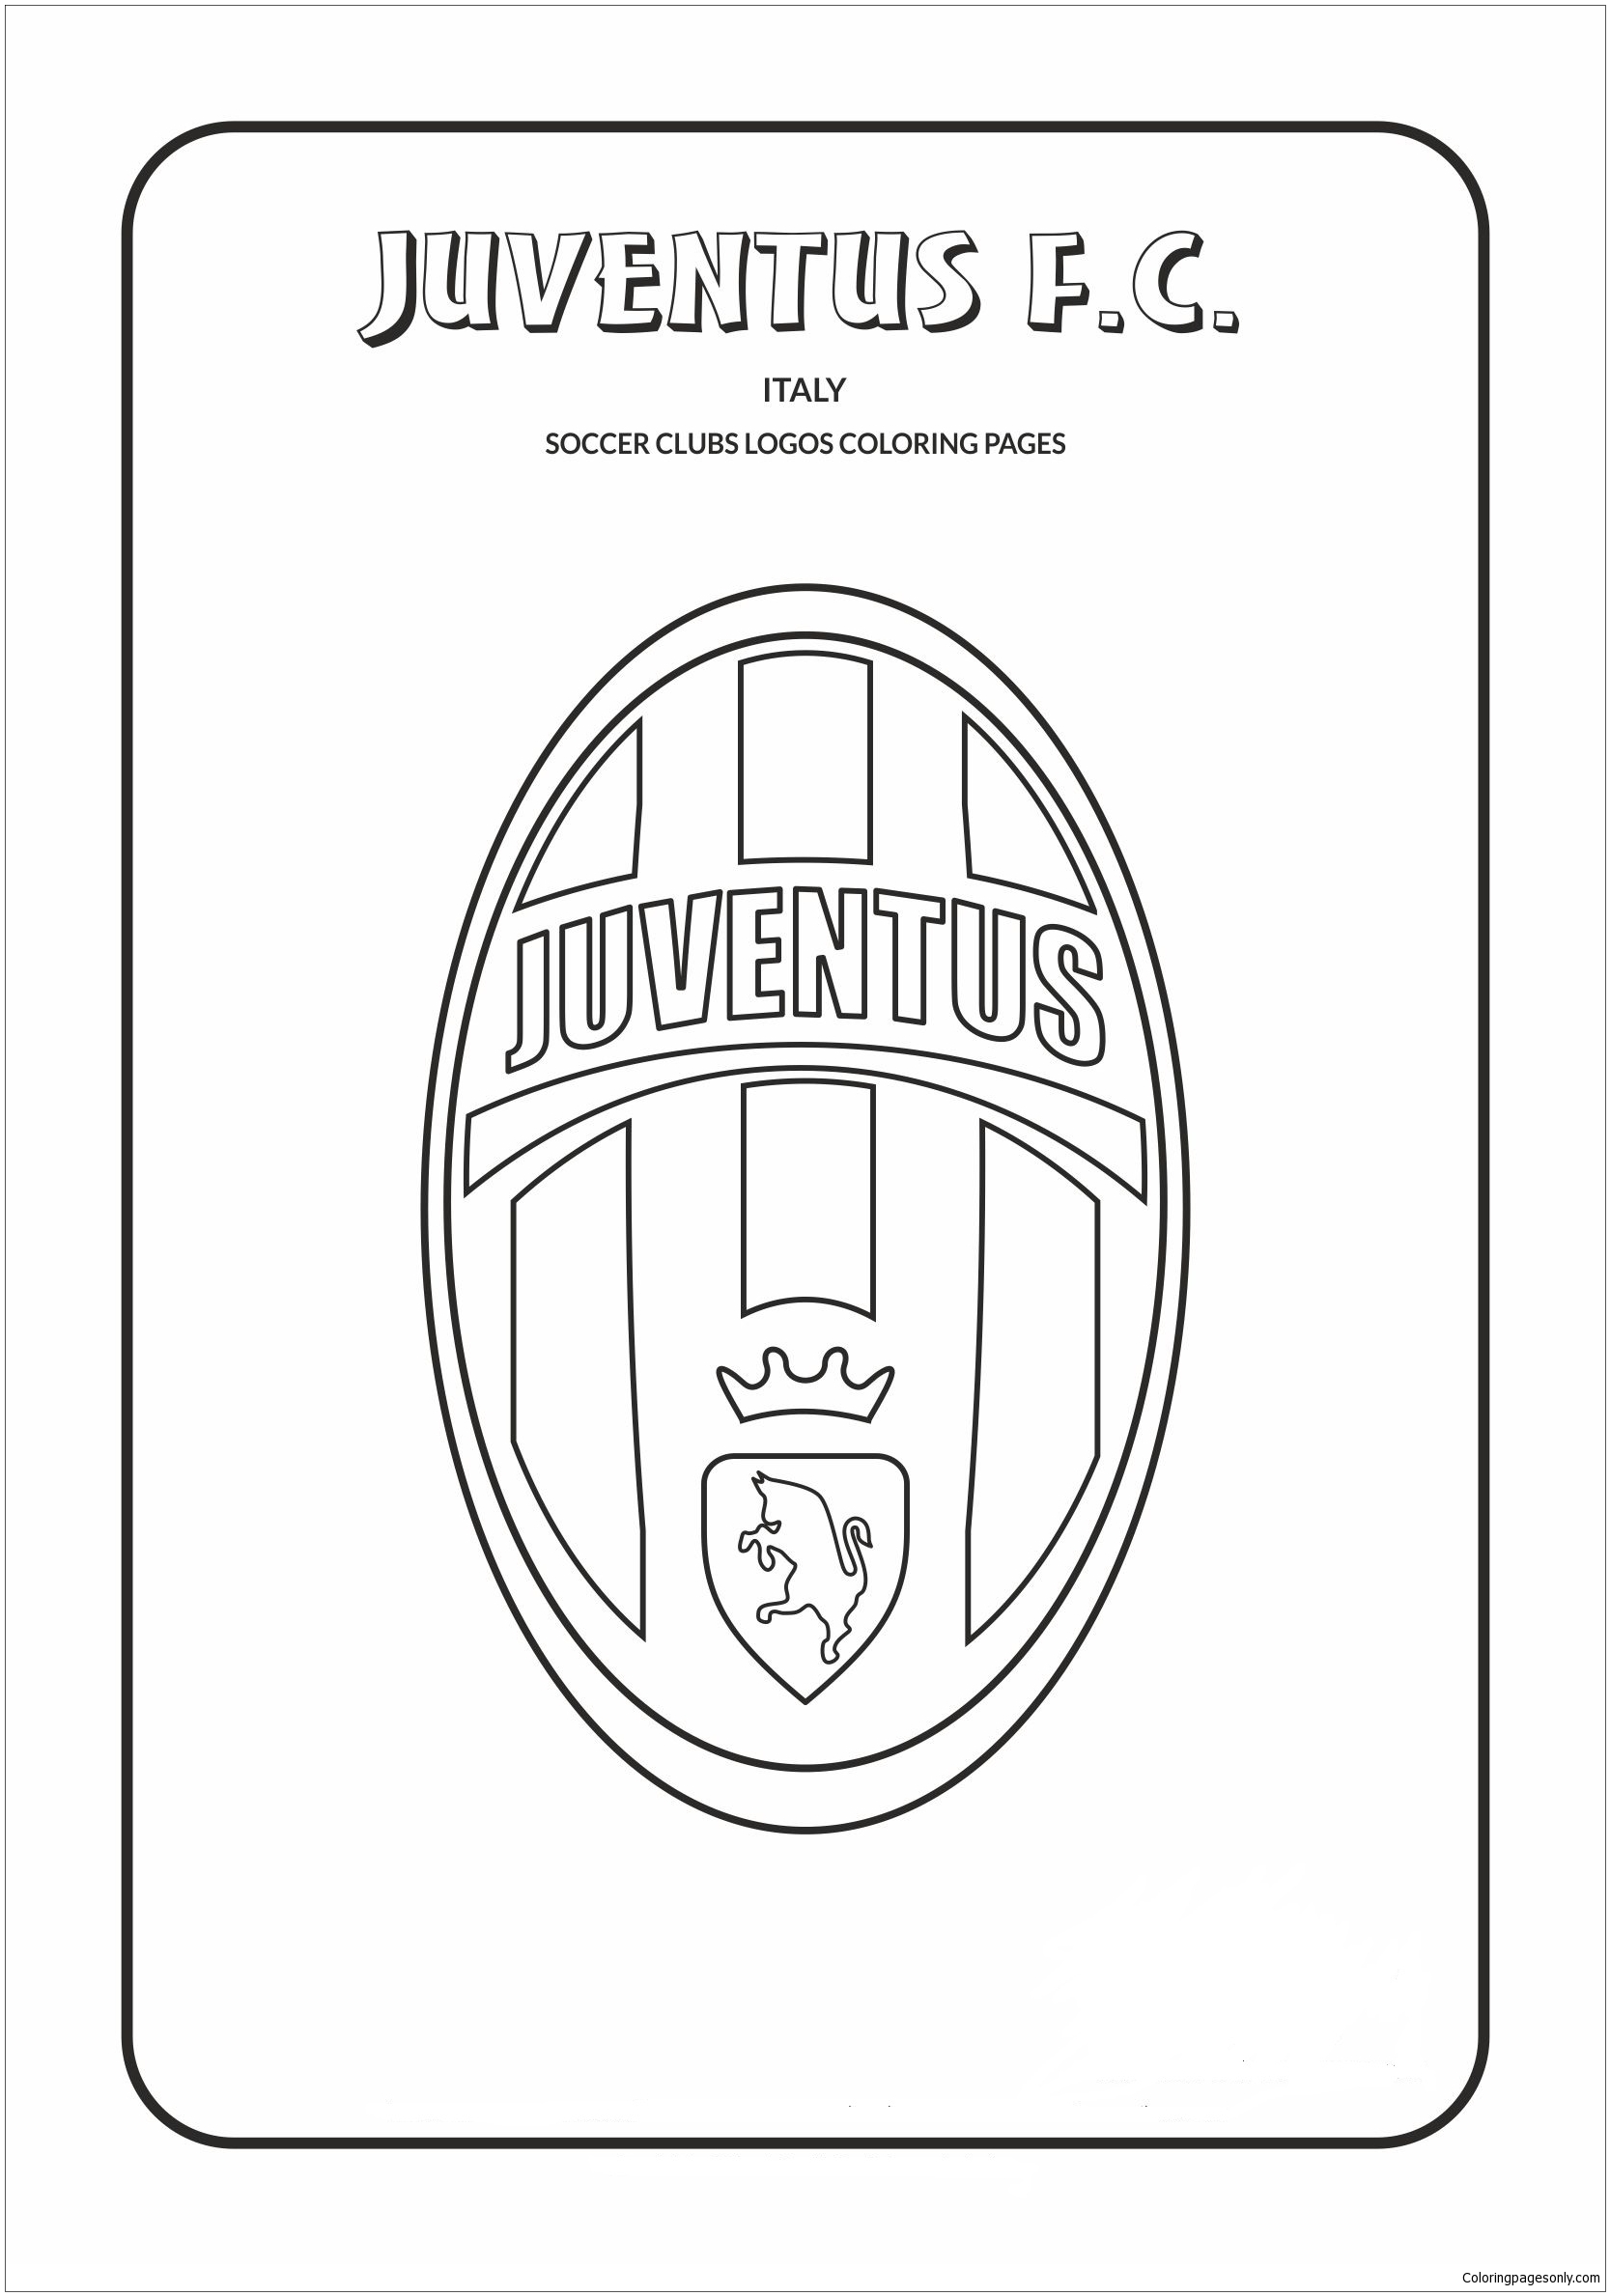 Juventus FC des logos de l'équipe italienne de Serie A